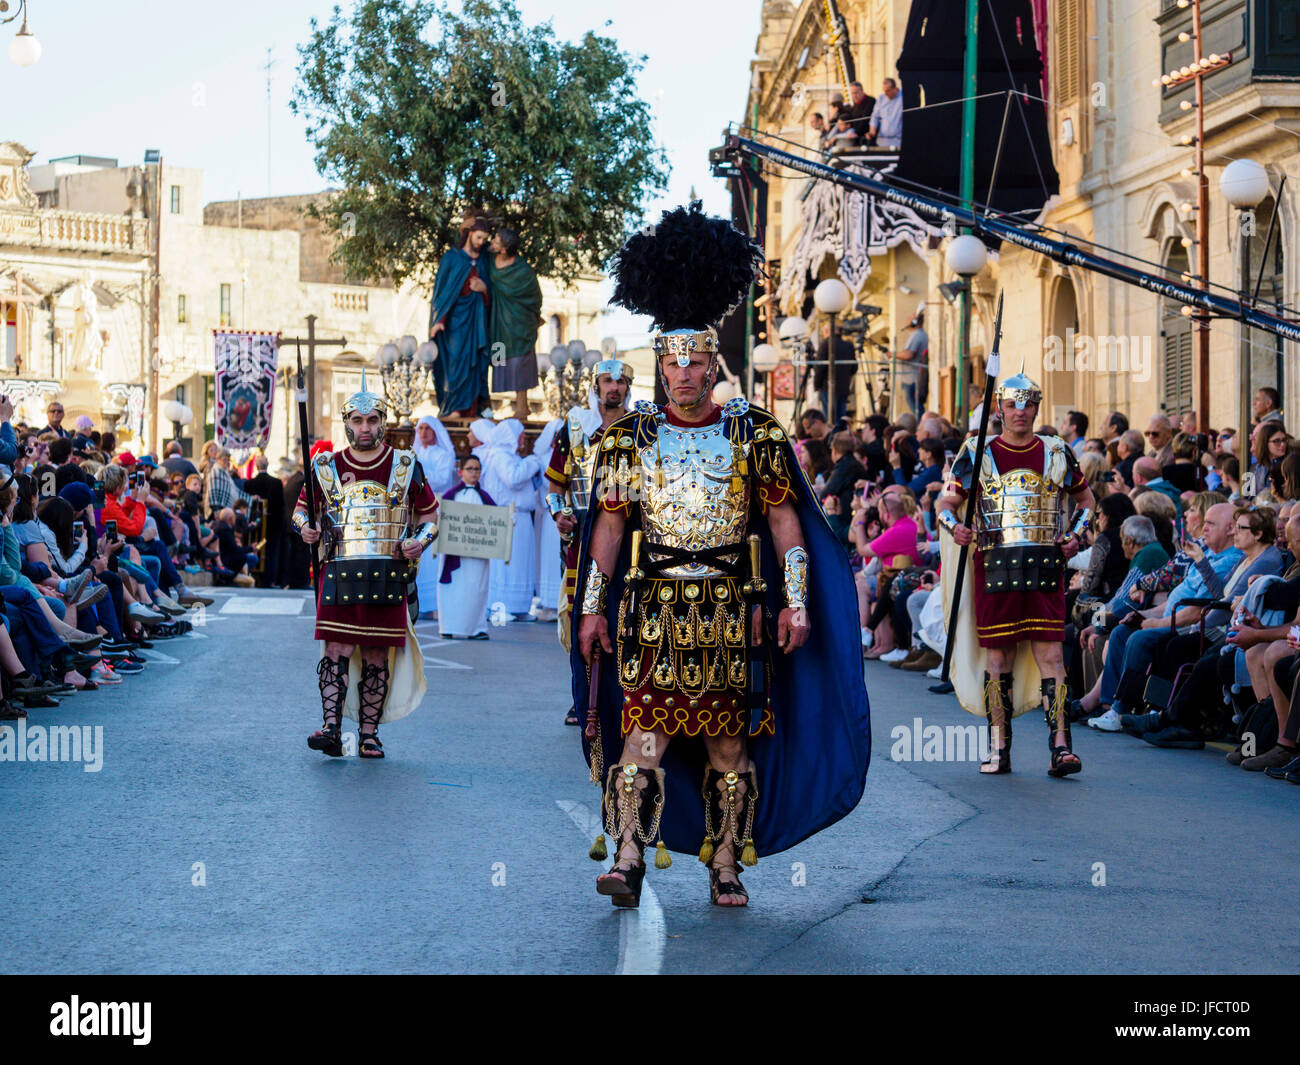 Habitantes de Zejtun / Malta tuvo su tradicional procesión del Viernes santo en frente de su iglesia, algunos de ellos vestidos como legionarios romanos Foto de stock